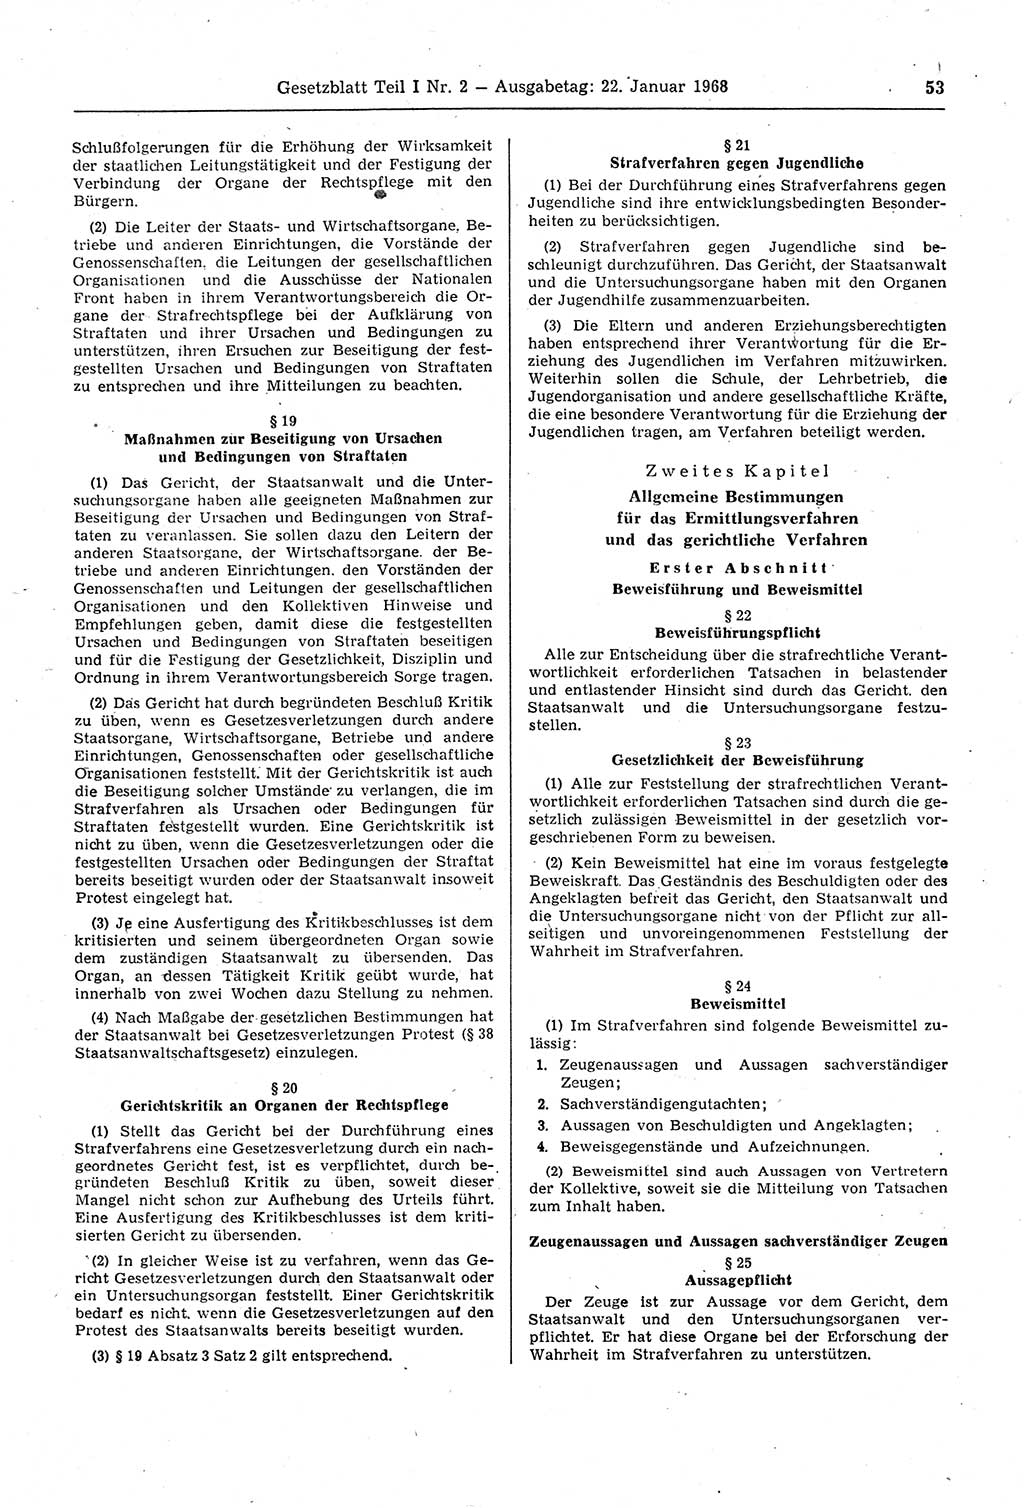 Gesetzblatt (GBl.) der Deutschen Demokratischen Republik (DDR) Teil Ⅰ 1968, Seite 53 (GBl. DDR Ⅰ 1968, S. 53)